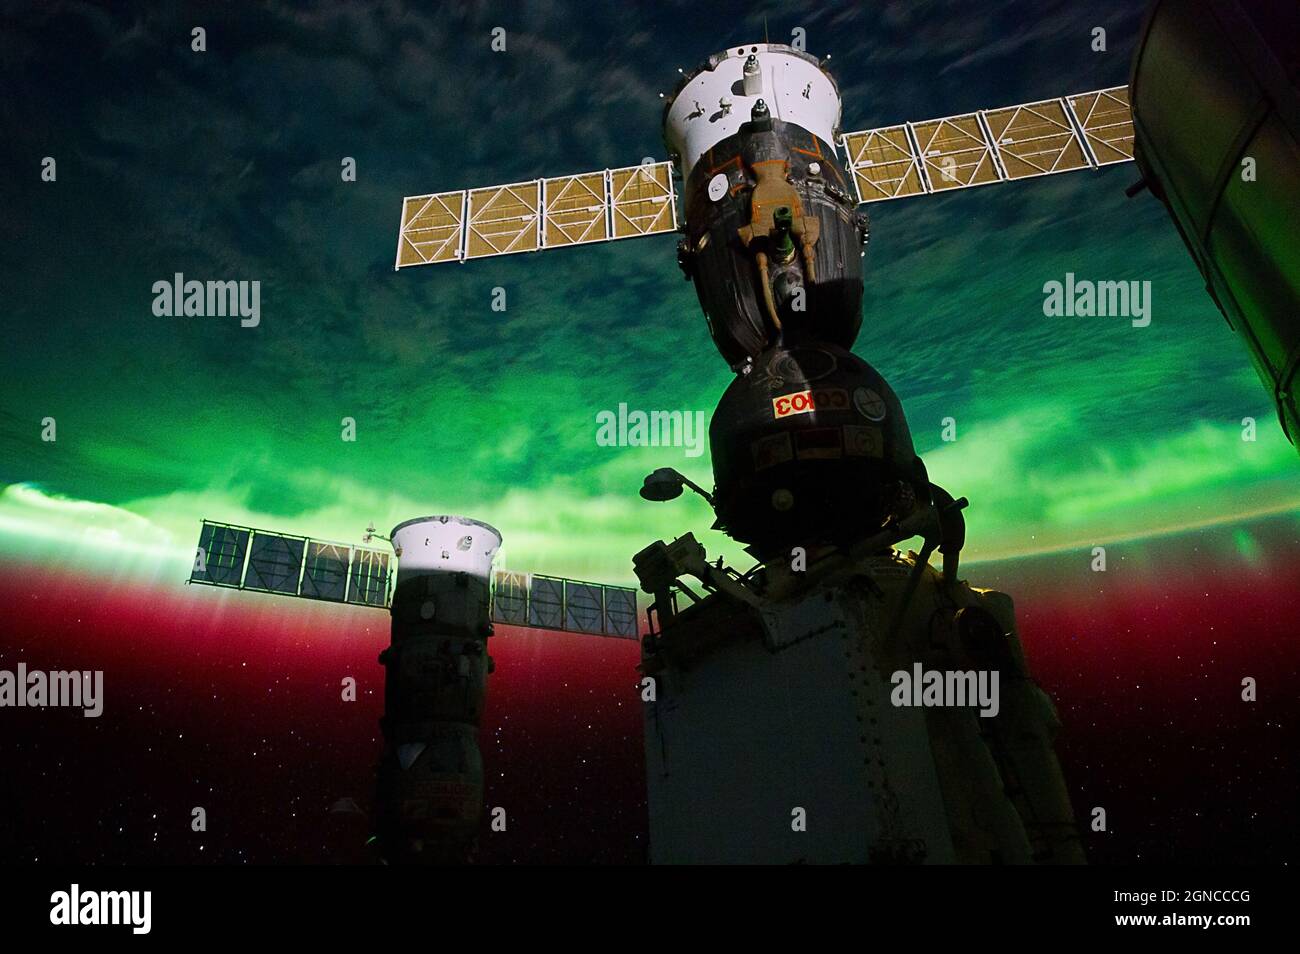 Ansicht von Aurora Australis, aufgenommen von der Besatzung der ISS Expedition 29. Eine von einer Serie von Nachtaufnahmen von der Internationalen Raumstation mit Aurora Australis, von einem Punkt über der südöstlichen Tasmanischen See in der Nähe von Süd-Neuseeland aus gesehen. Eine optimierte und digital verbesserte Version eines NASA-Bildes/Credit NASA. Stockfoto